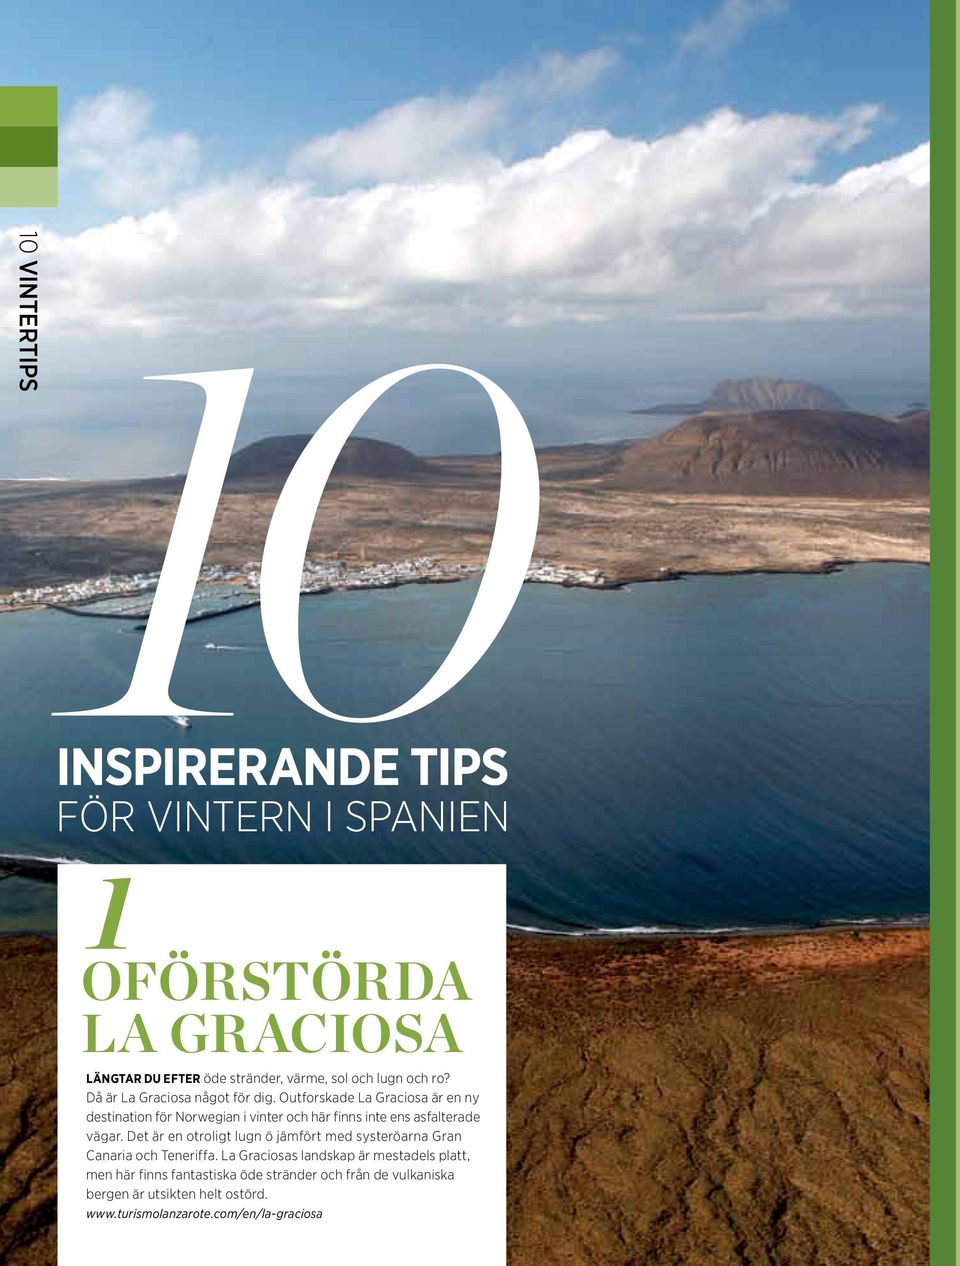 Outforskade La Graciosa är en ny destination för Norwegian i vinter och här finns inte ens asfalterade vägar.